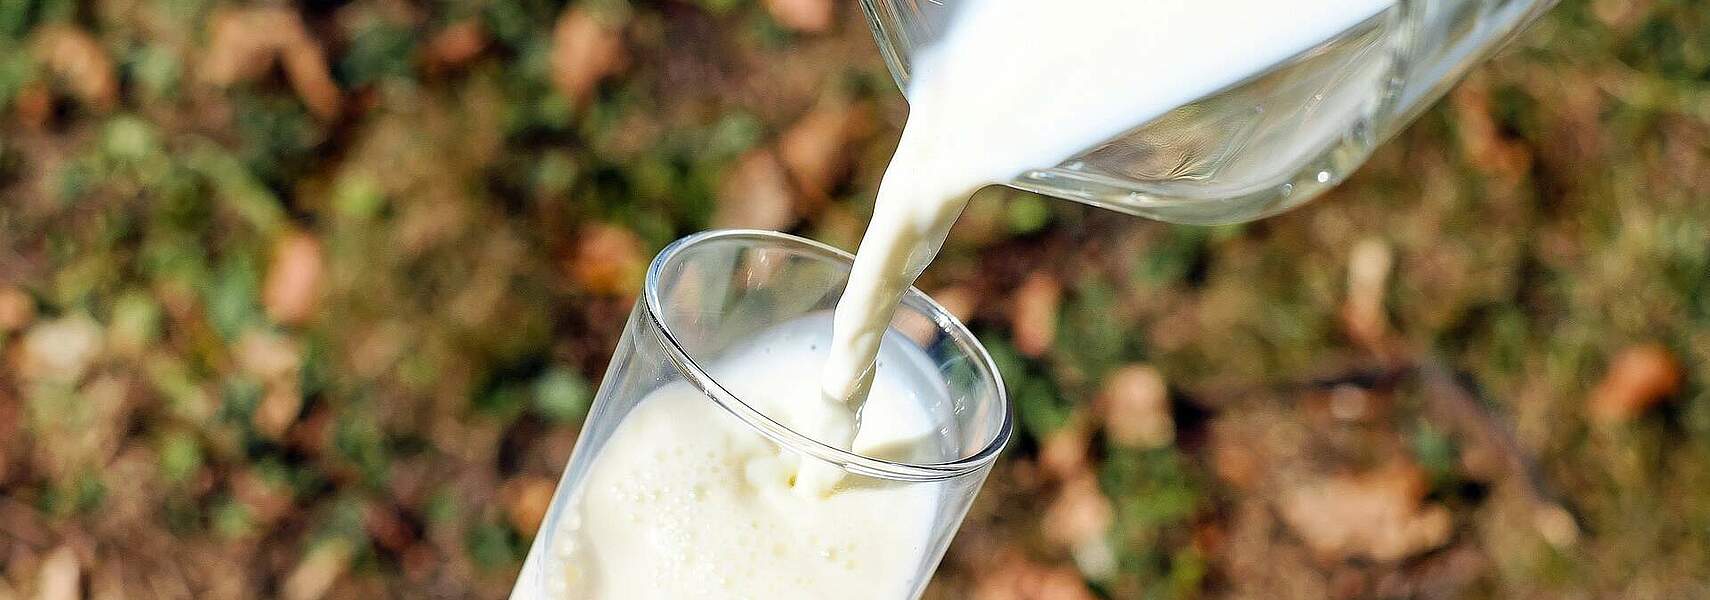 Milch: Wichtiger Teil der Ernährungssicherung